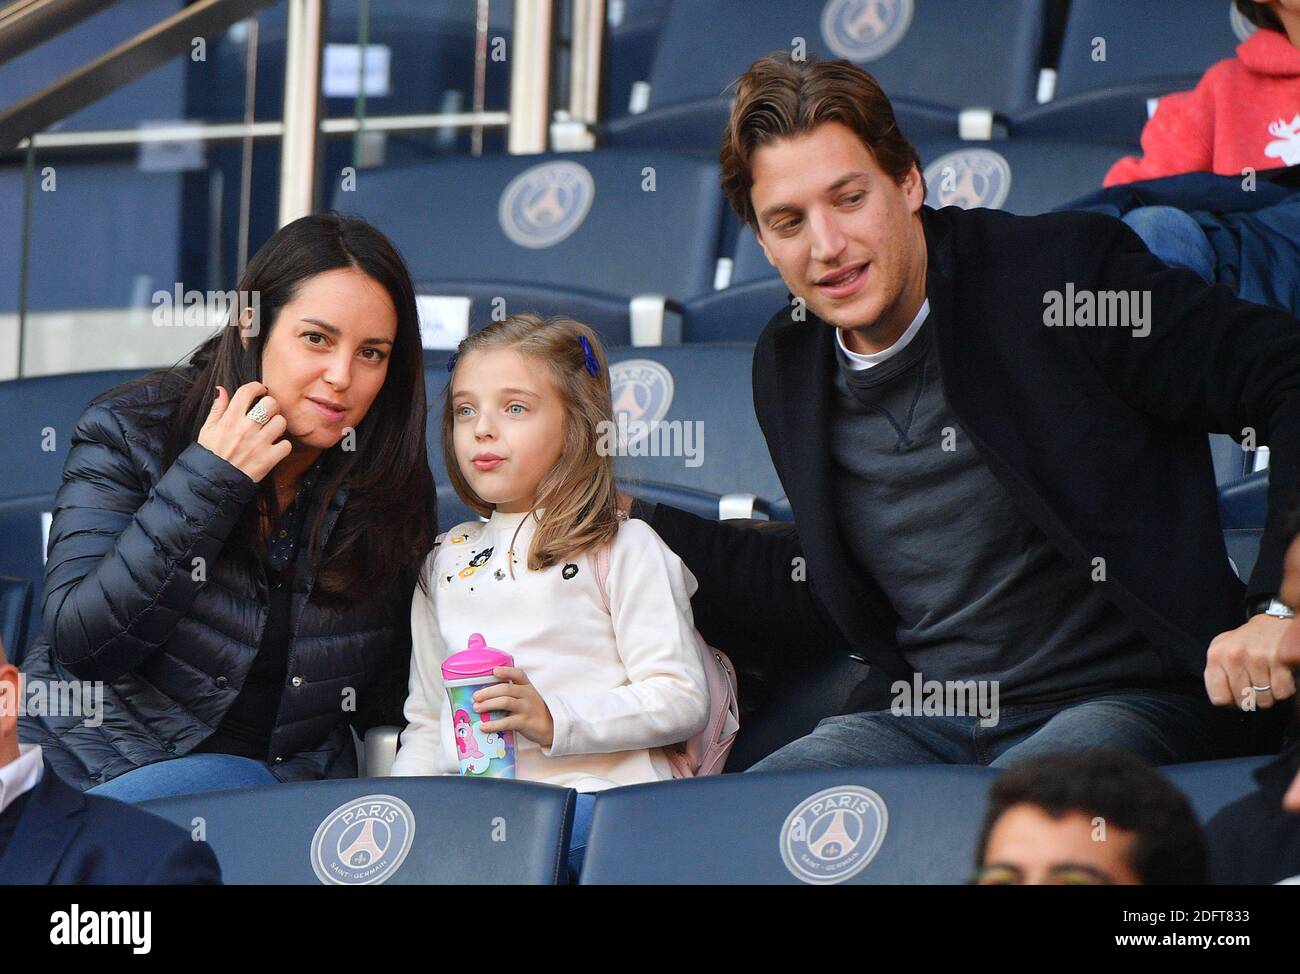 Veuillez cacher le visage des enfants avant la publication - Jean Sarkozy  avec sa Jessica et ses enfants Solal et Lola lors du match de football de  la Ligue 1 Paris Saint-Germain (